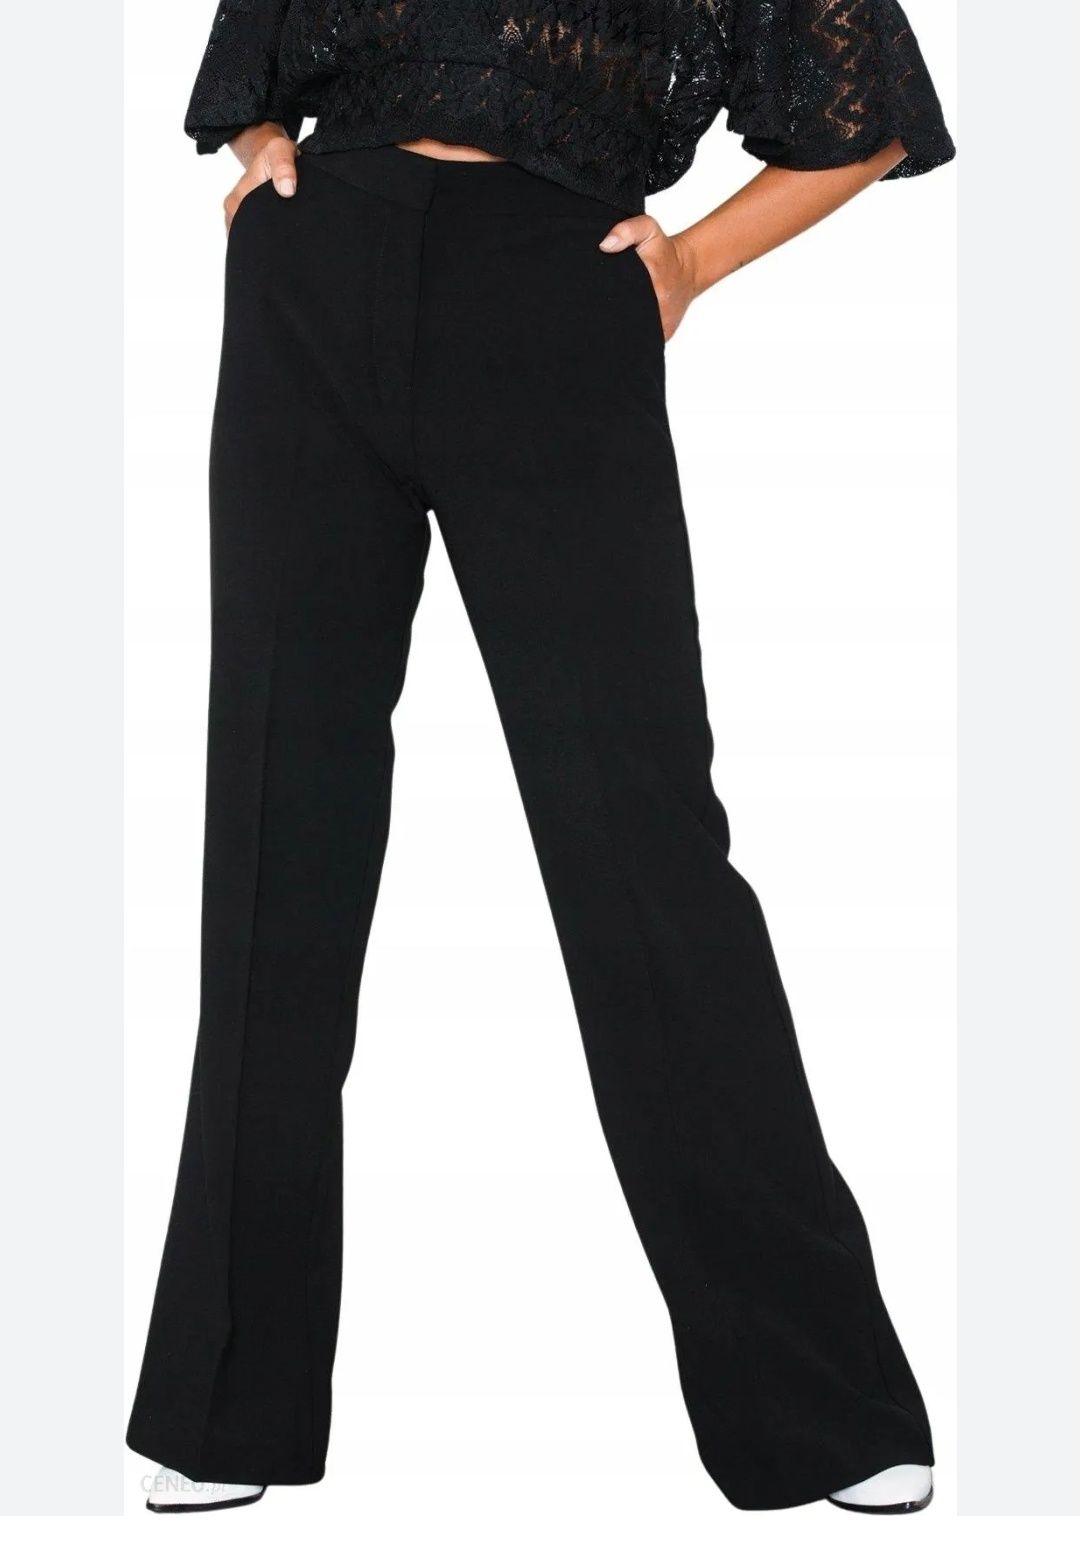 Eleganckie /nowe/ spodnie /Classic/ klasyczne spodnie/ do pracy /